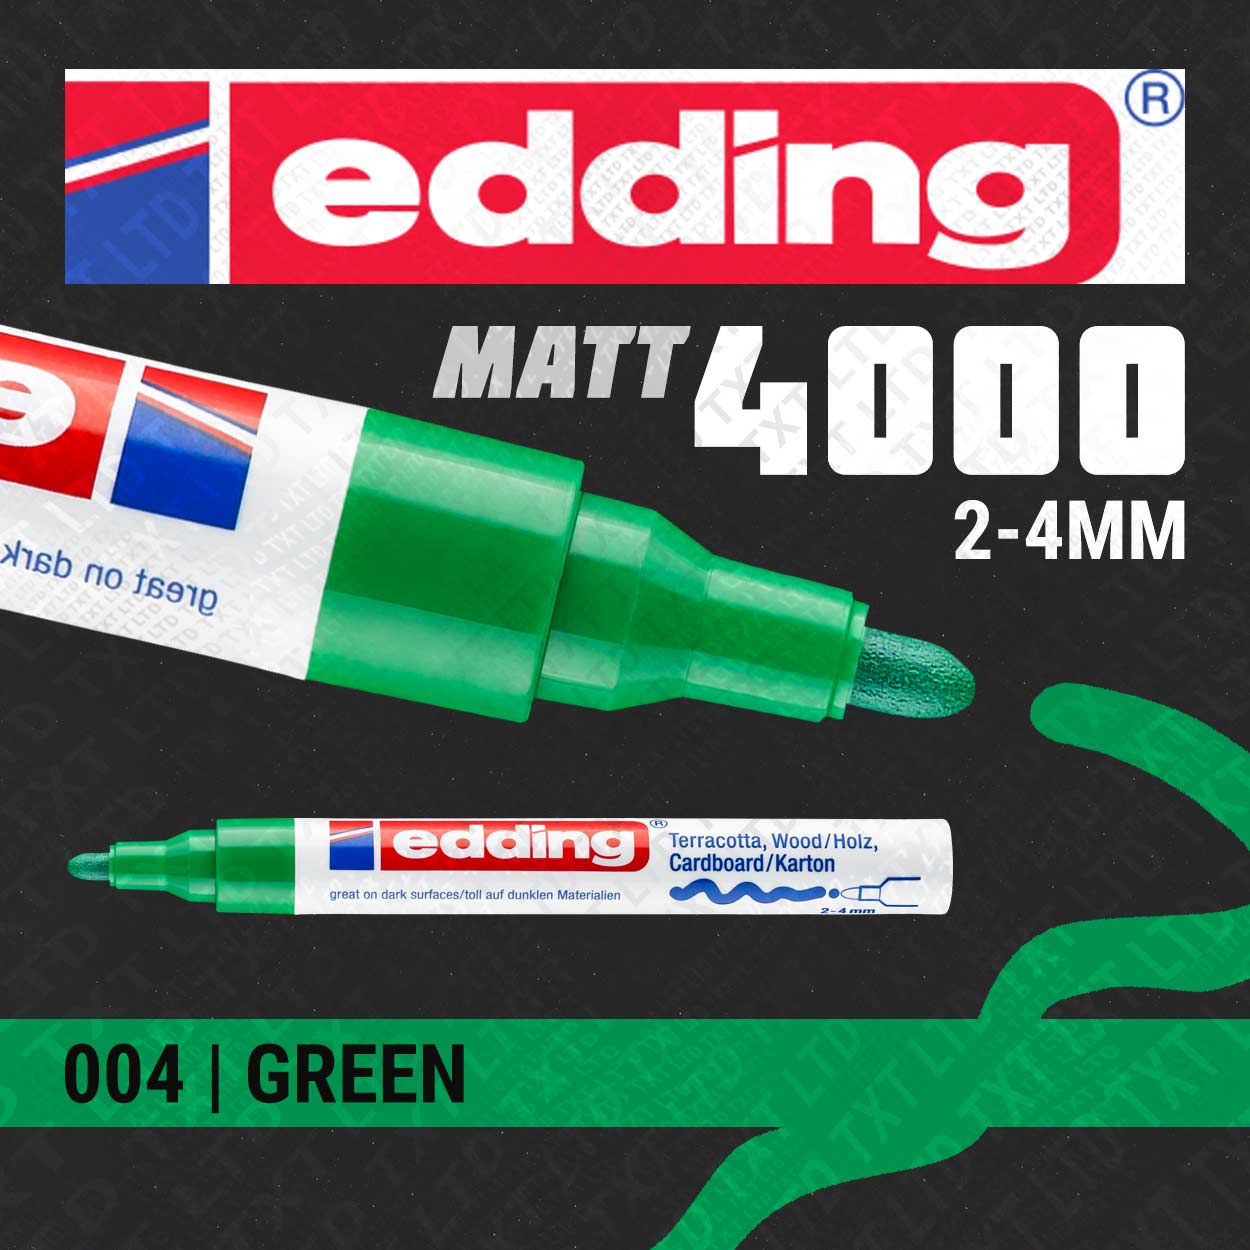 edding 4000 Matt Paint Marker